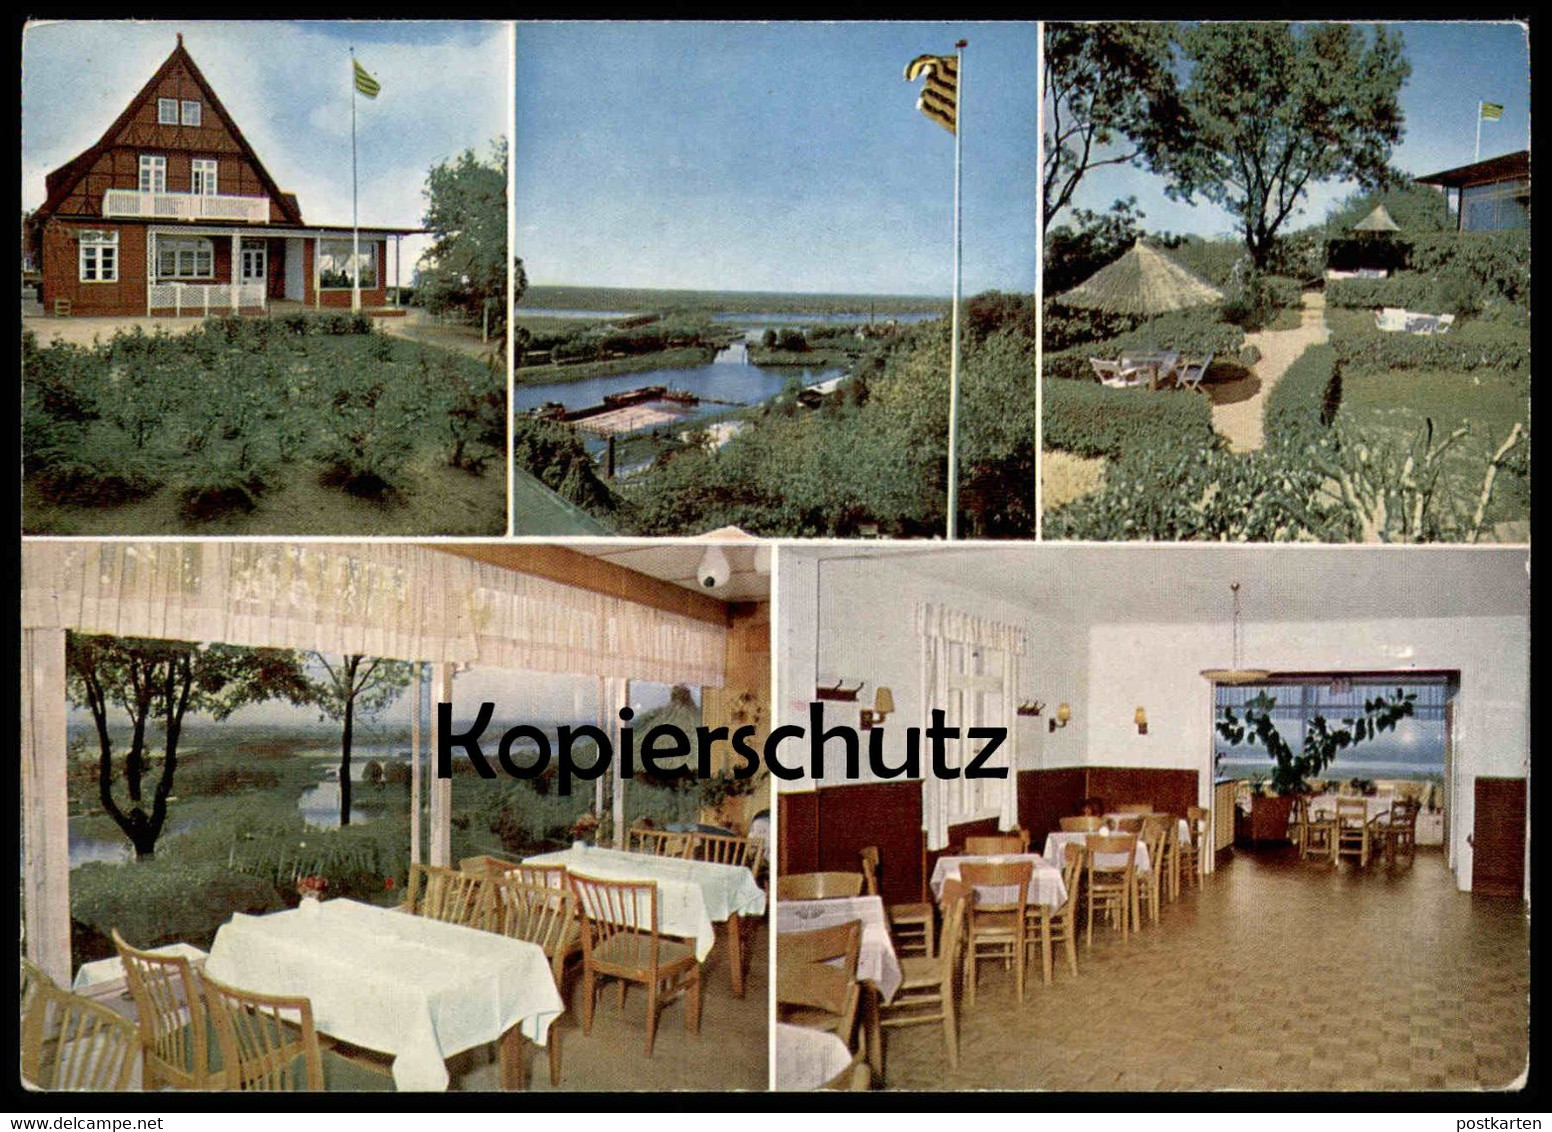 ÄLTERE POSTKARTE LAUENBURG HOTEL UND RESTAURANT ZUM HALBMOND FR. STAHLBOCK Ansichtskarte AK Postcard Cpa - Lauenburg